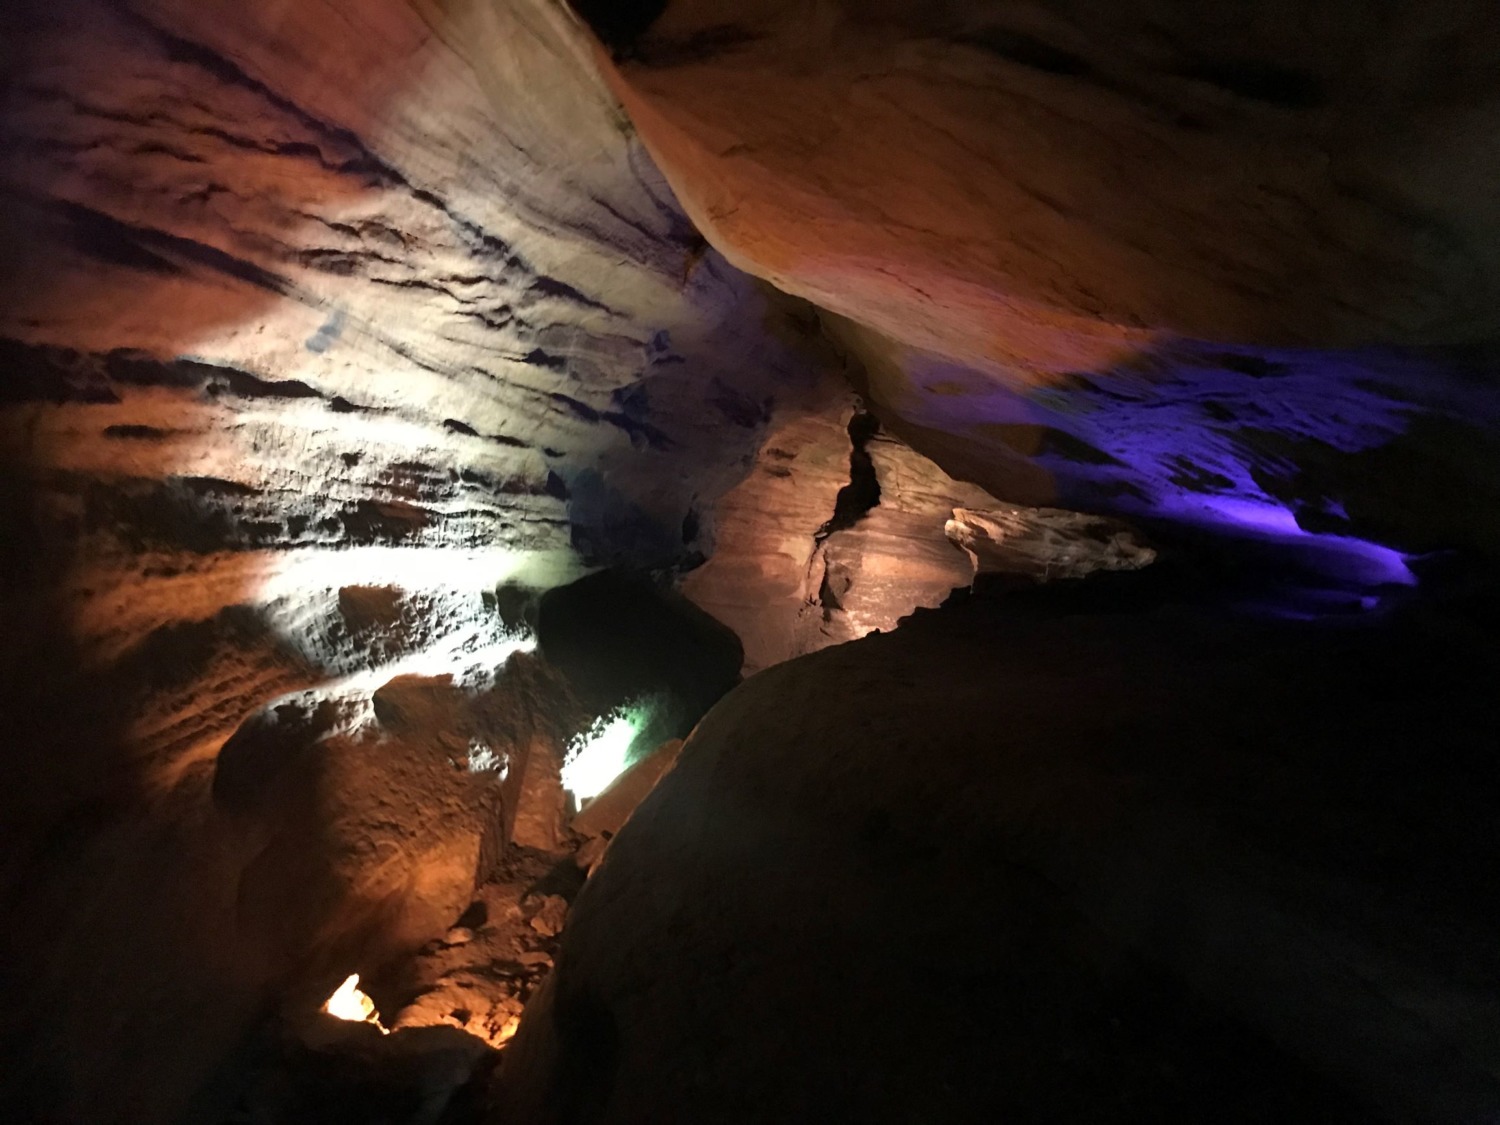 laurel caverns tours prices